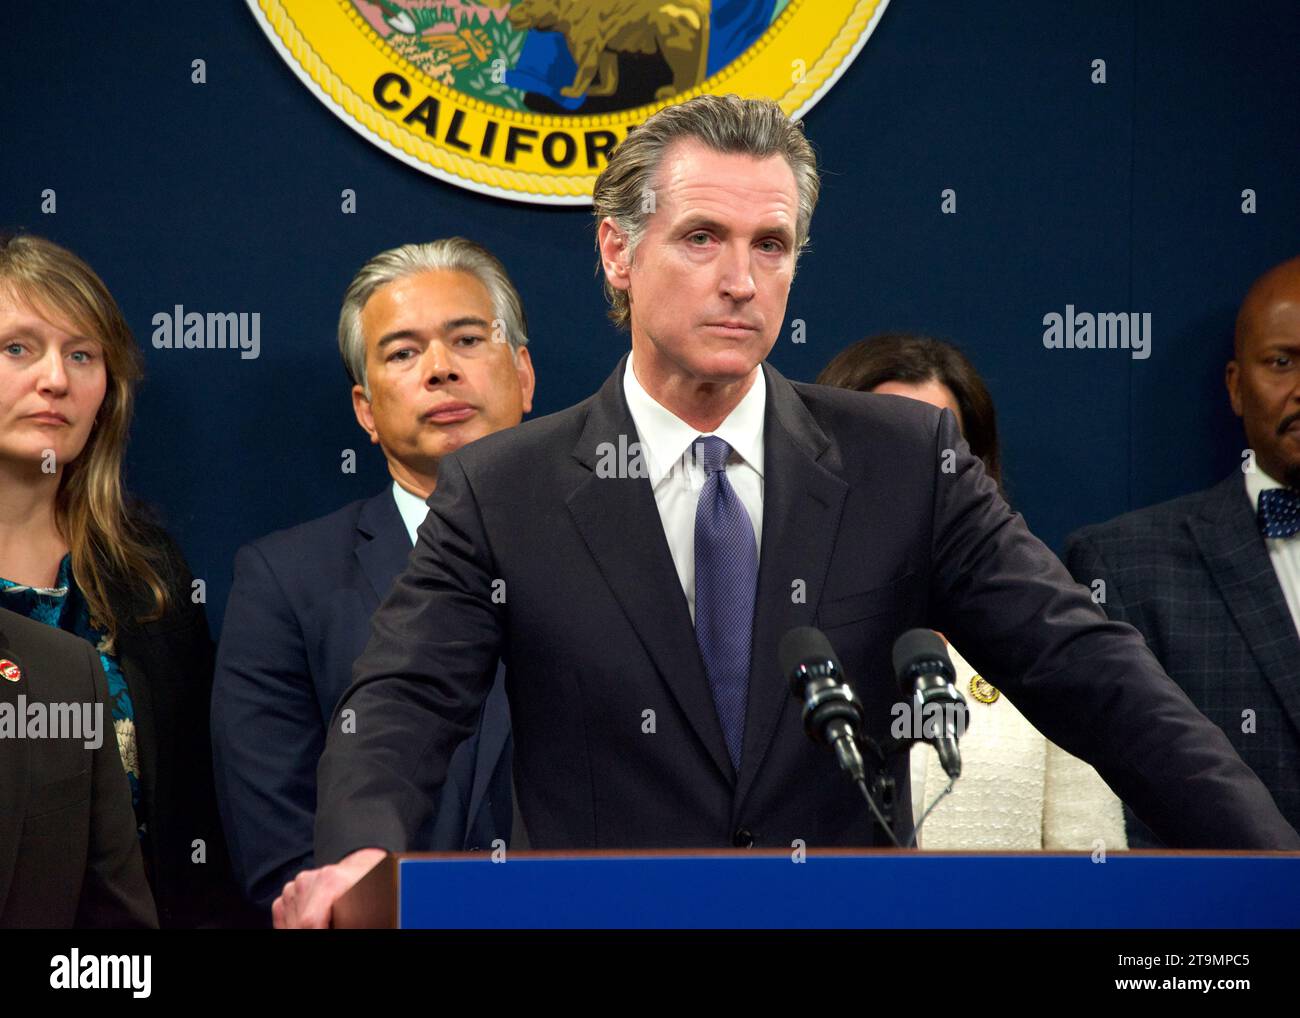 Sacramento, KALIFORNIEN - 1. Februar 2023: Gouverneur Gavin Newsom spricht auf einer Pressekonferenz für Waffensicherheit. Stockfoto